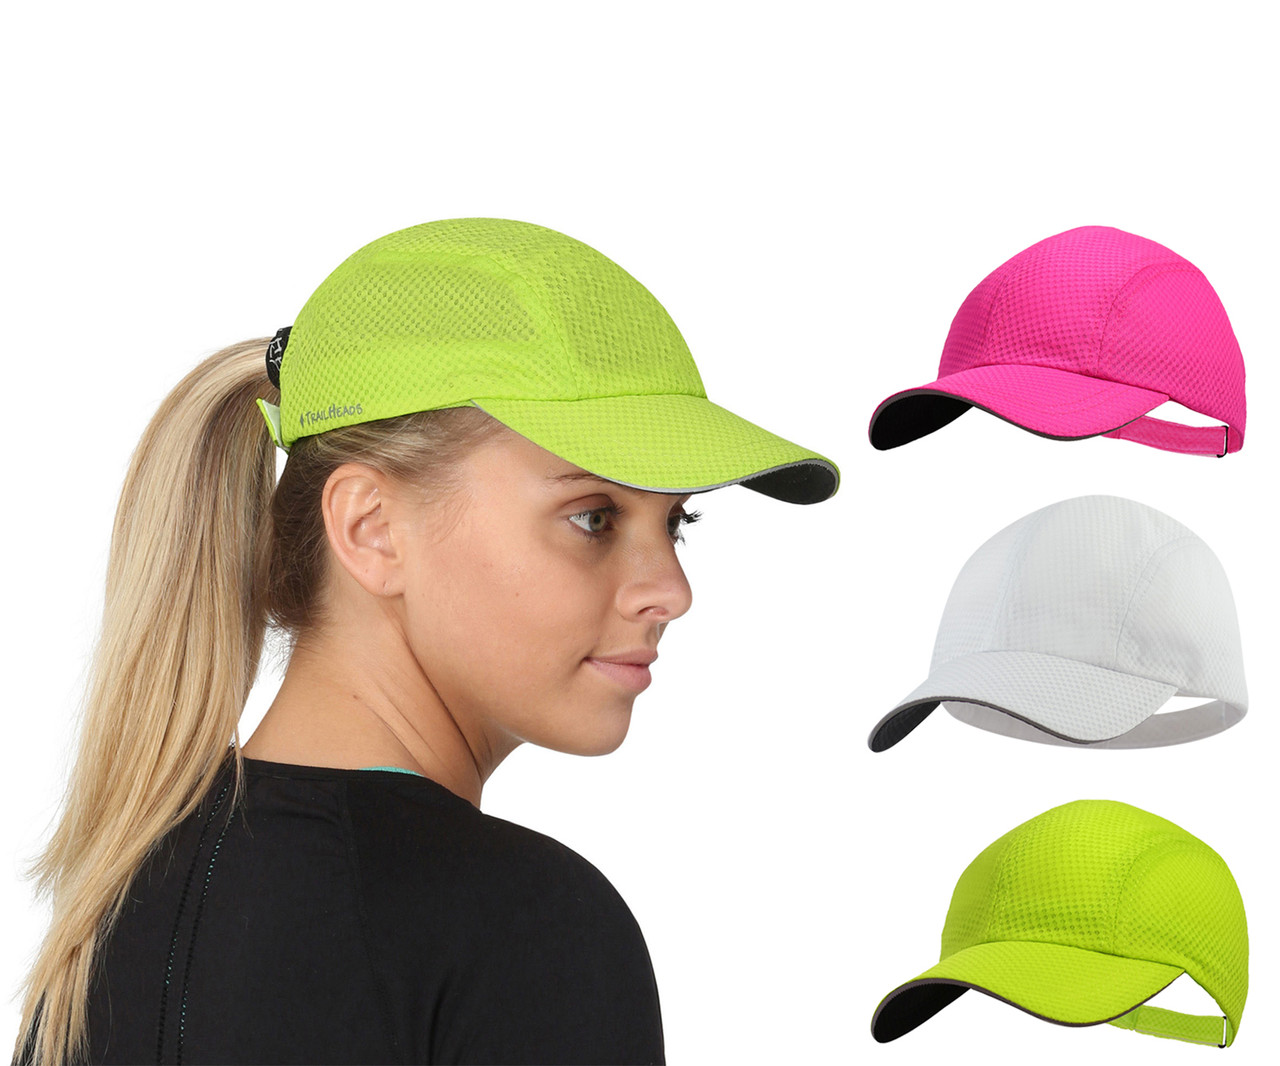 Women's running baseball cap, 65% af geweldige deal